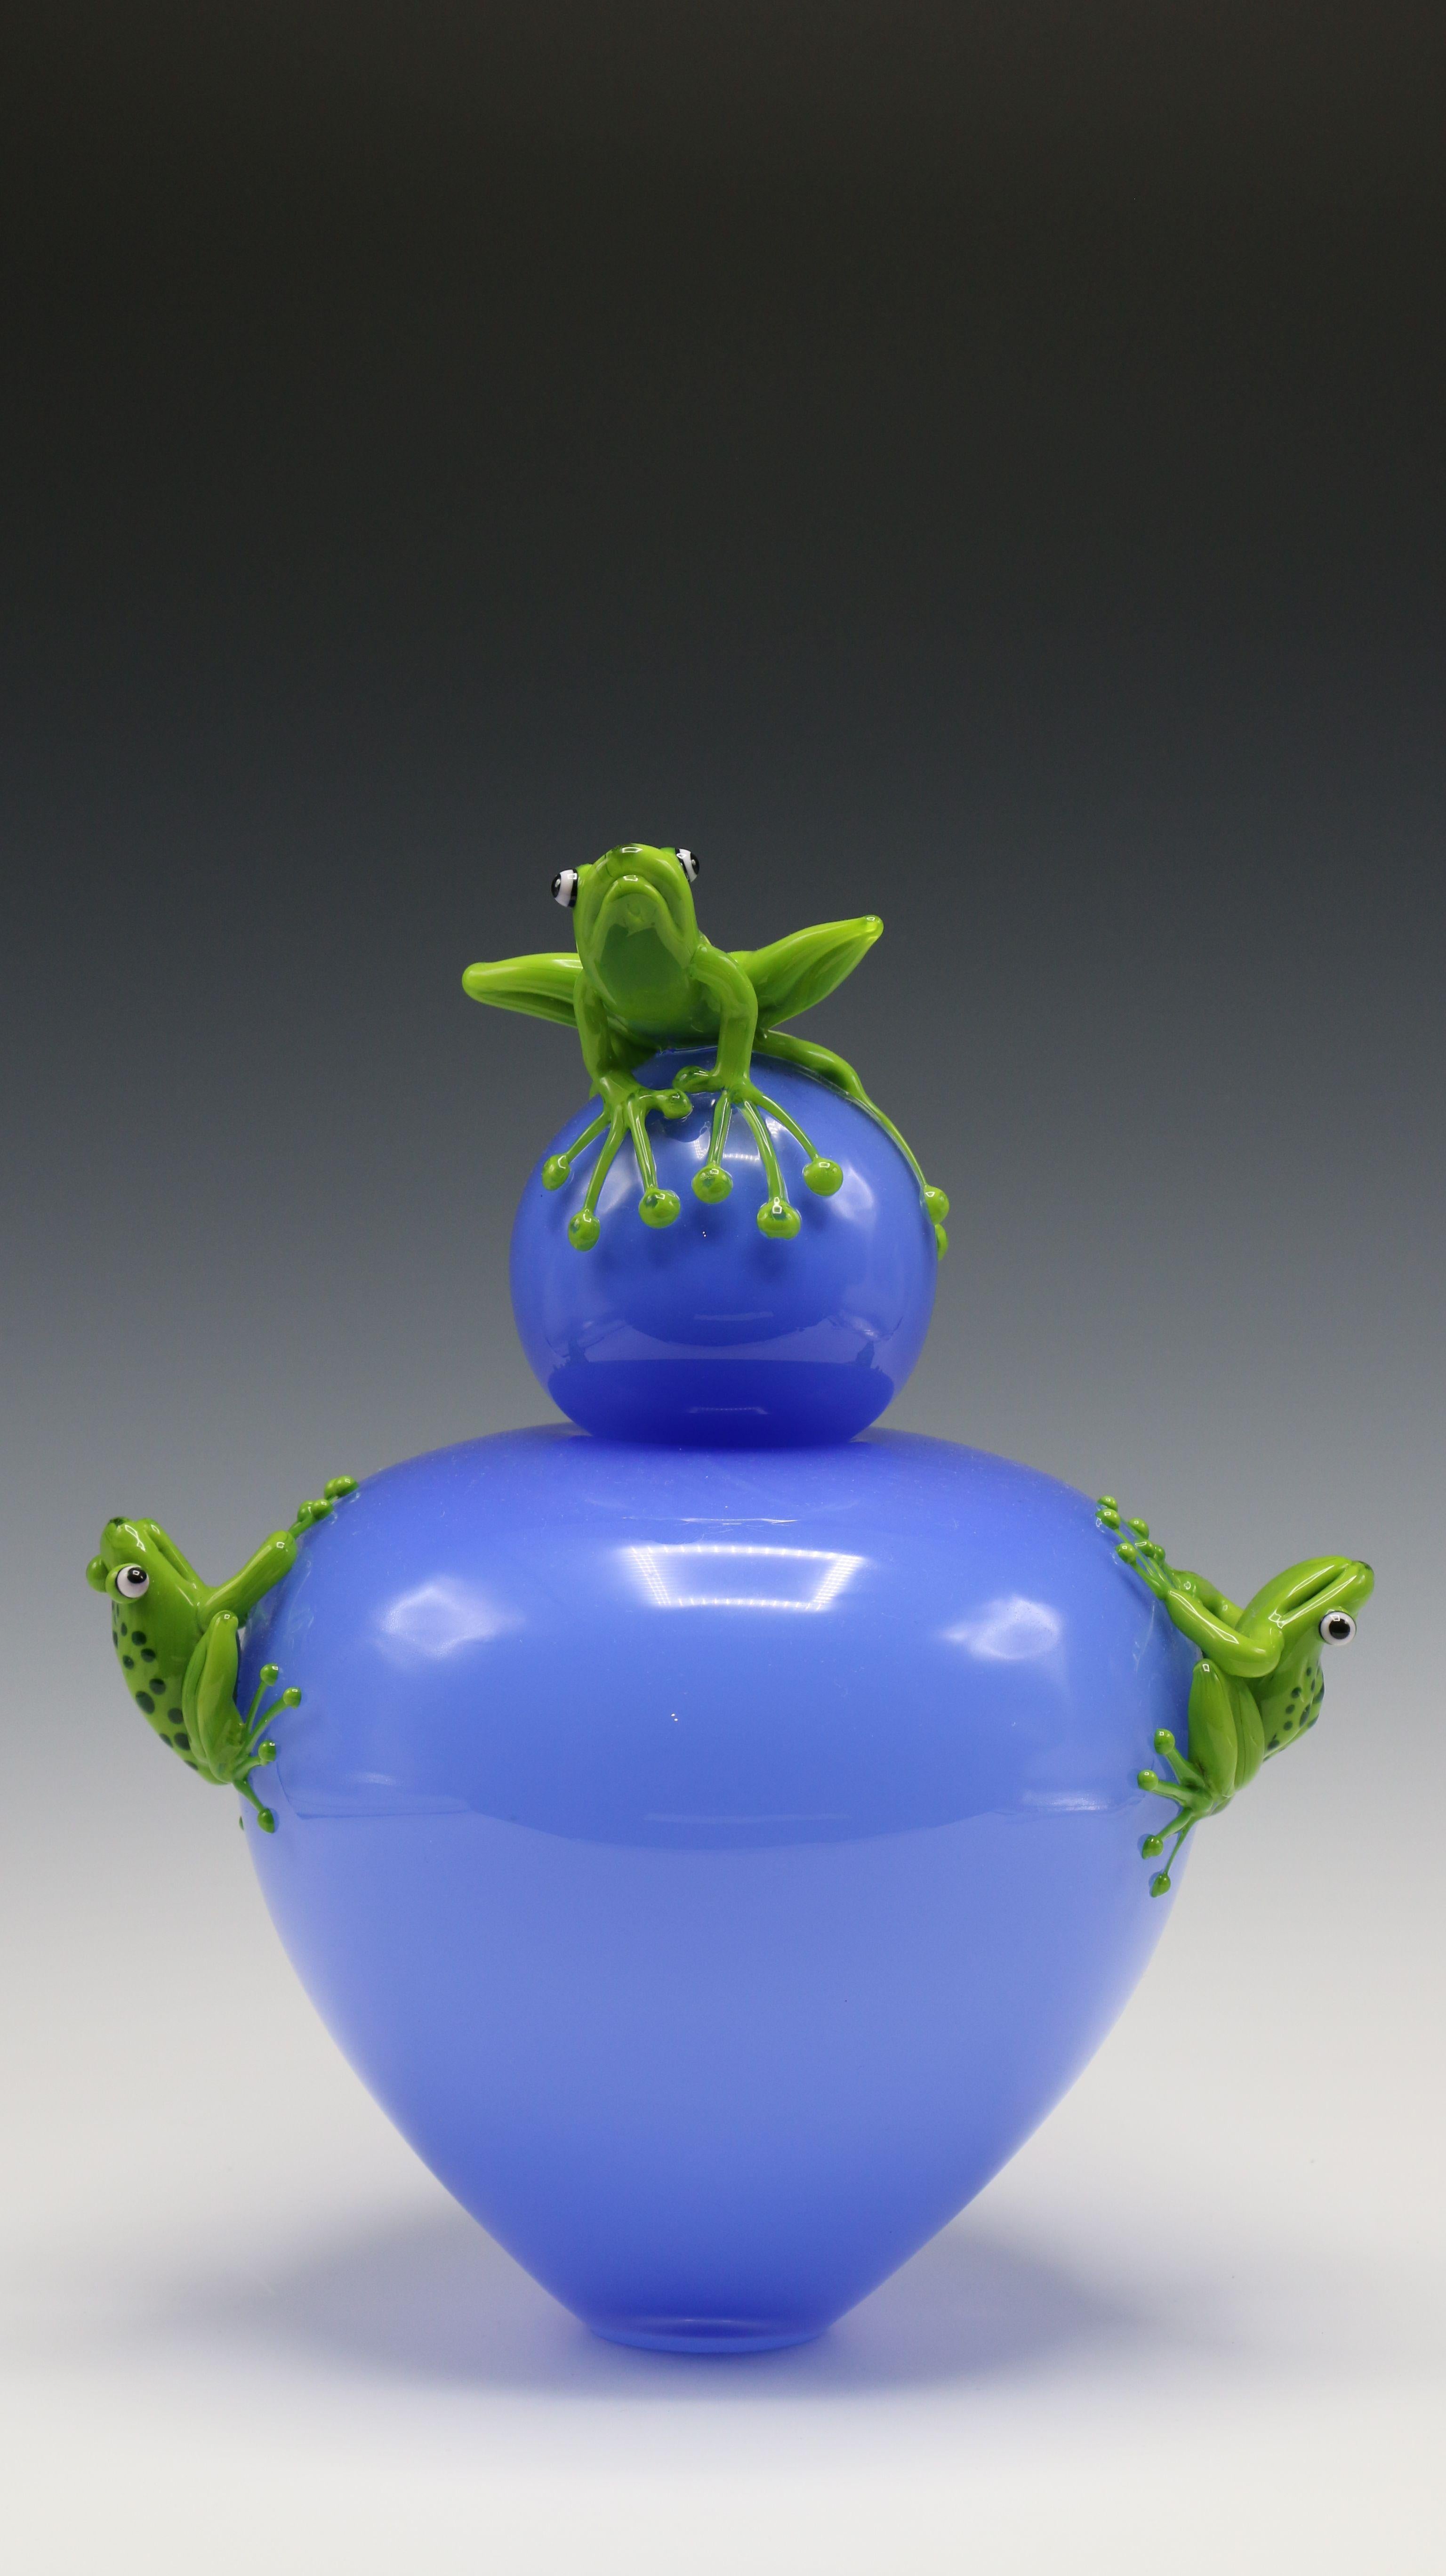 Frosch-Vase – Sculpture von Joe Peters and Peter Muller